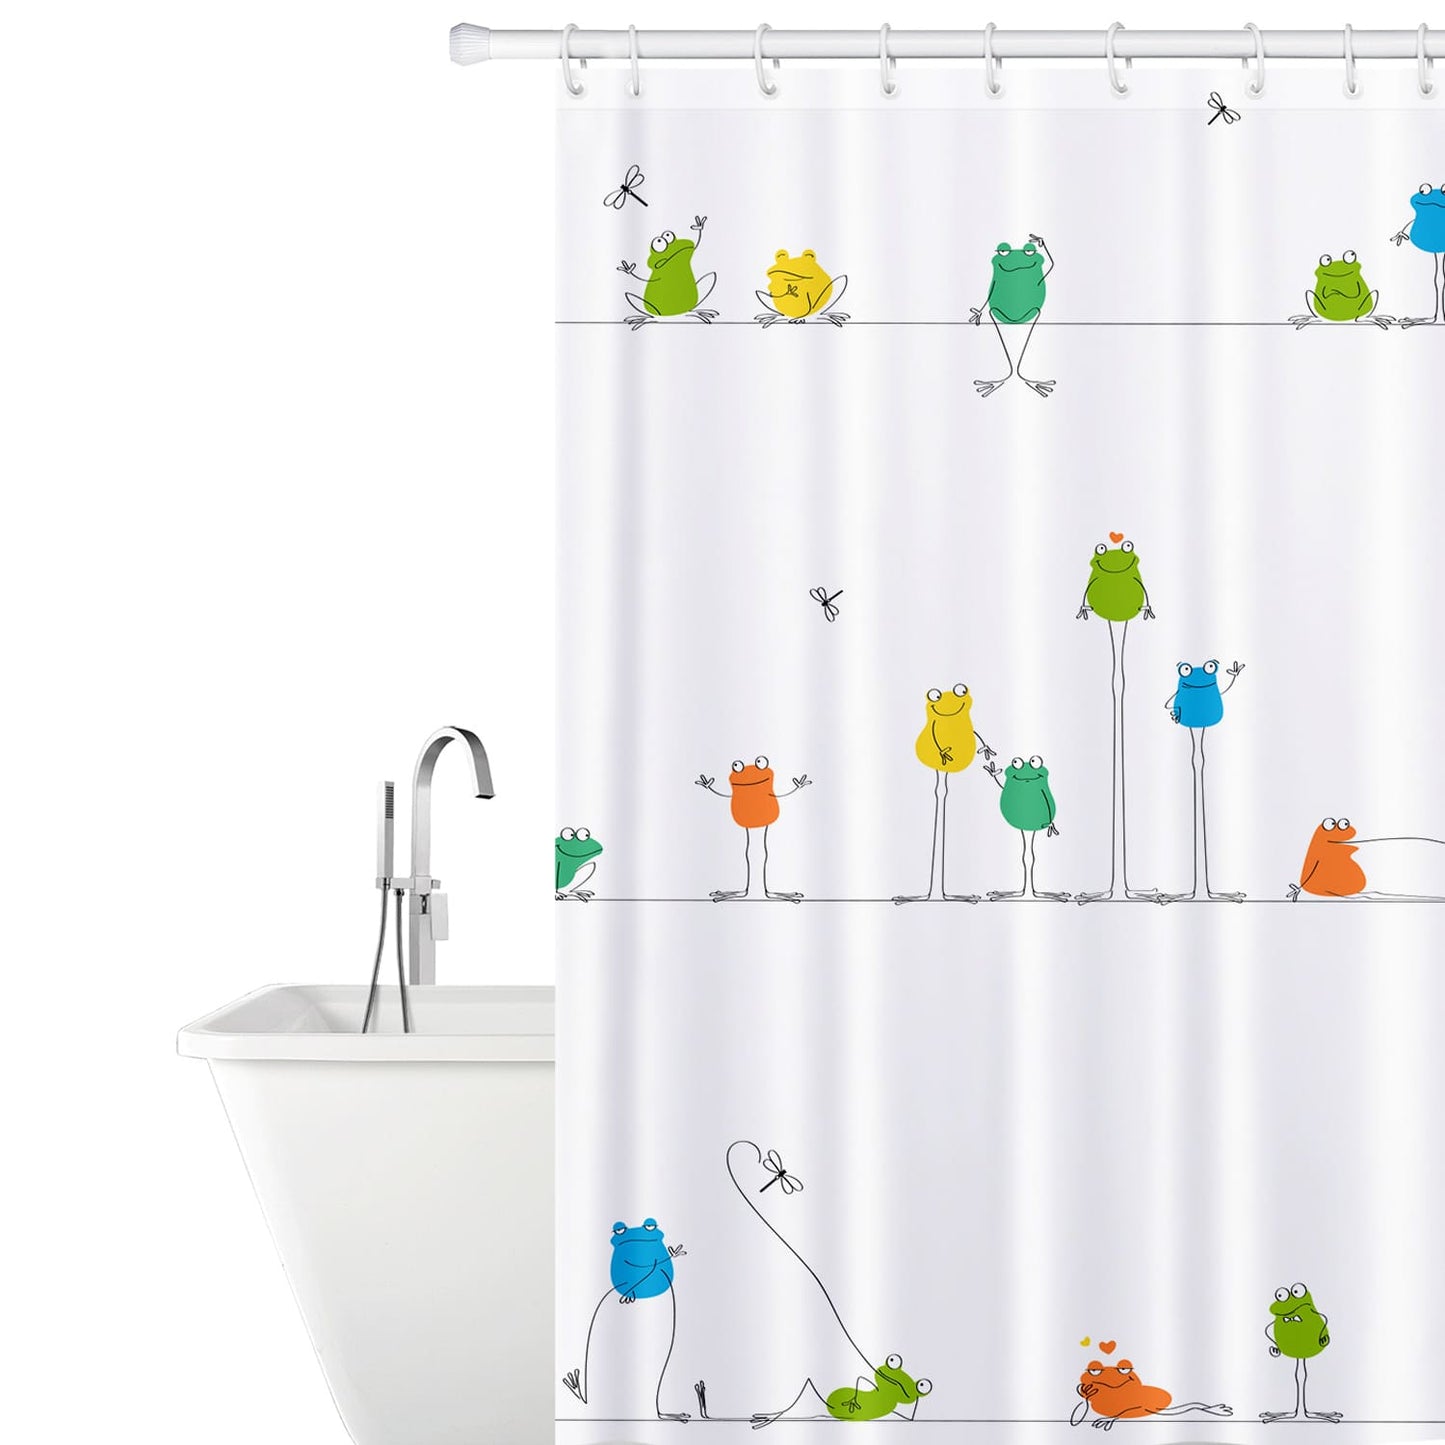 Duschvorhang, Duschvorhang Textil, Duschvorhang Modern, mit 12 Vorhangringen, Textil Polyester, Tatkraft Funny Frogs, 2